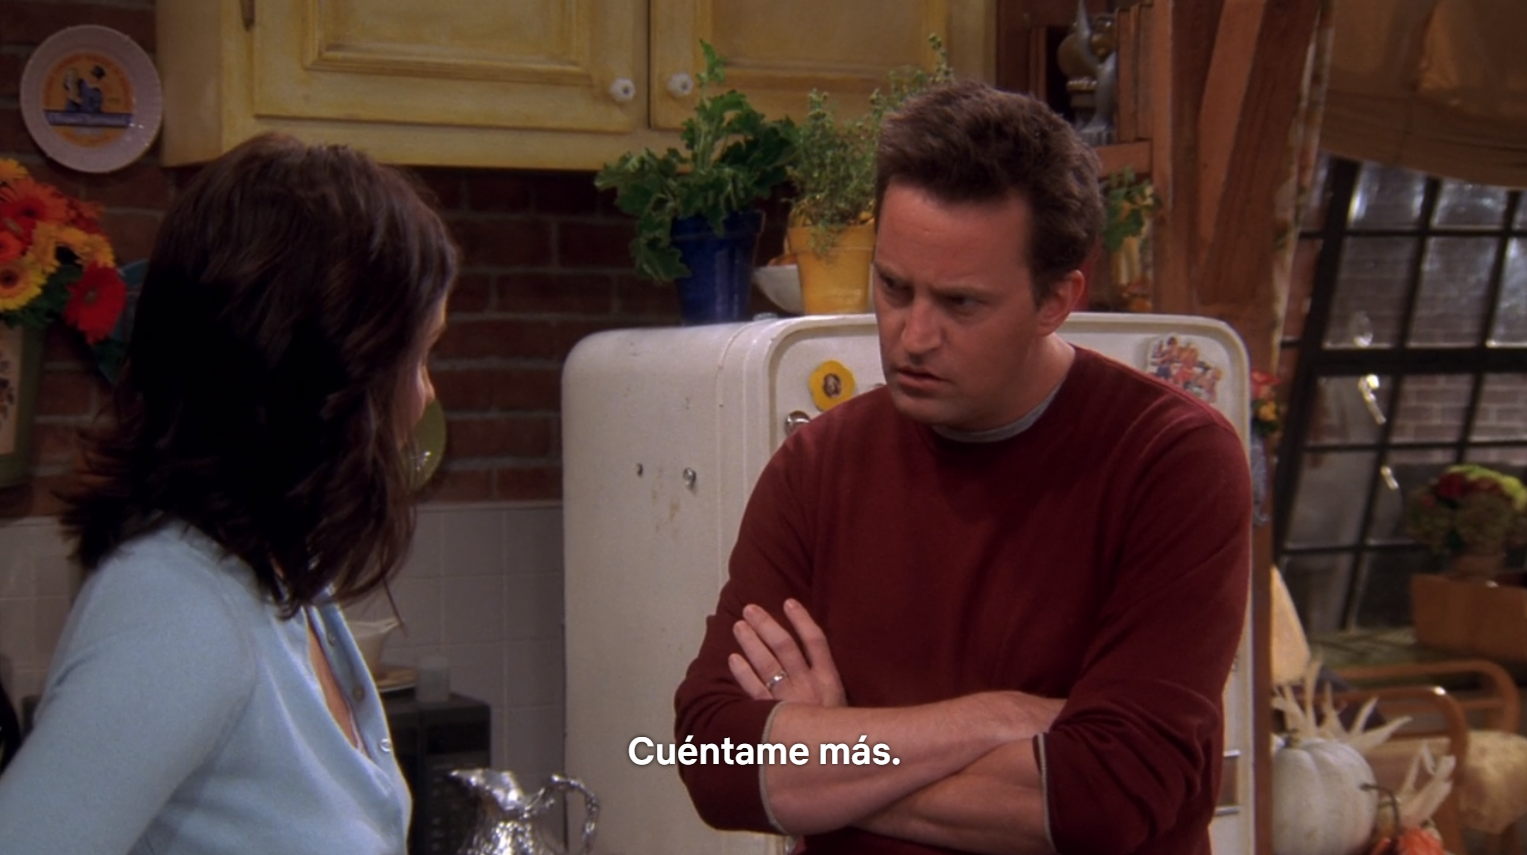 Escena de Friends, Chandler Bing le dice a Monica: "Cuéntame más"